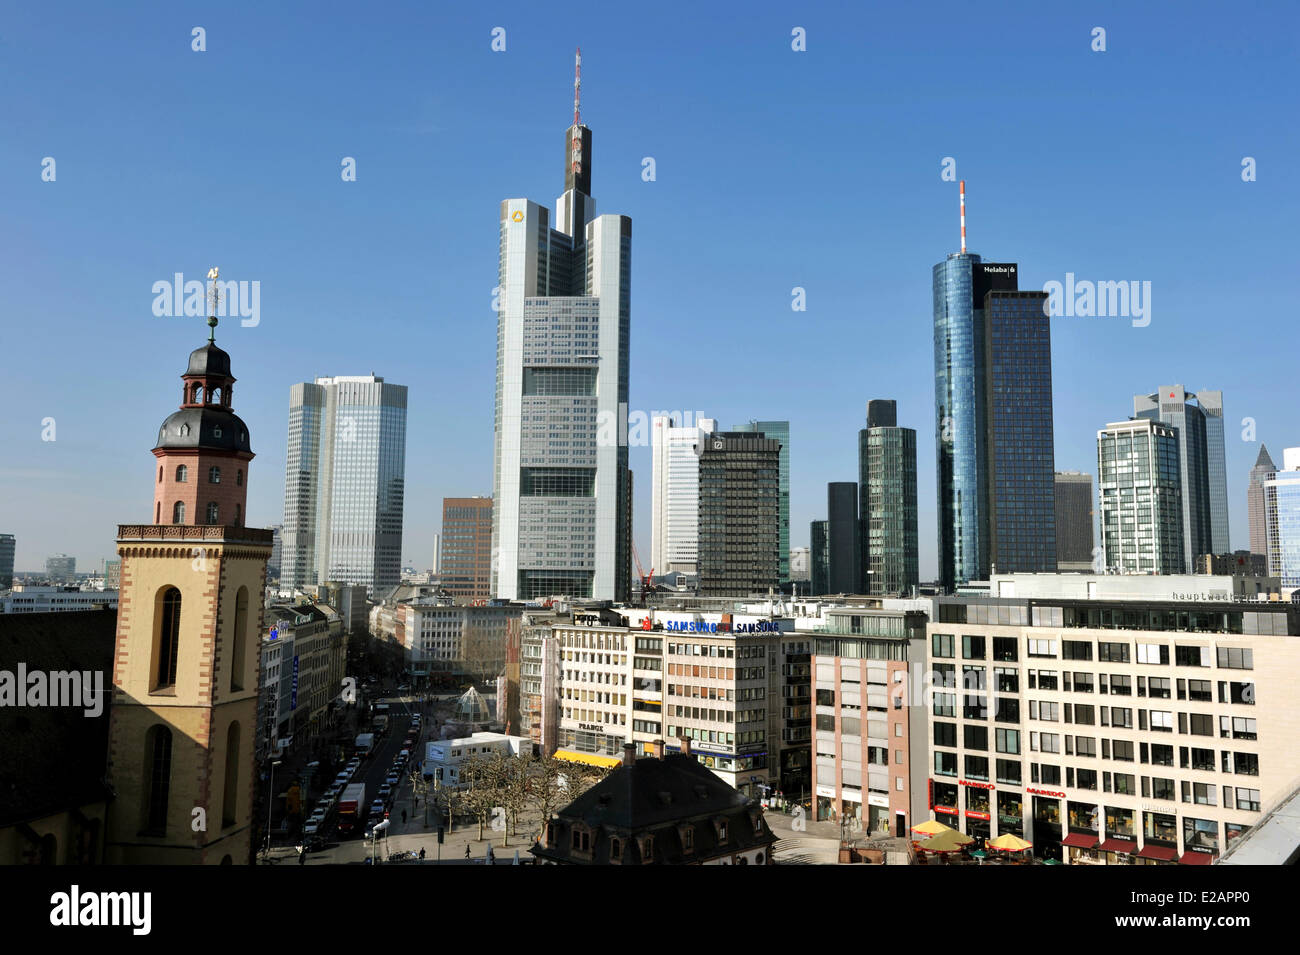 Allemagne, Hesse, Frankfurt am Main, Hauptwache et Katharinenkirche avec gratte-ciel en arrière-plan Banque D'Images